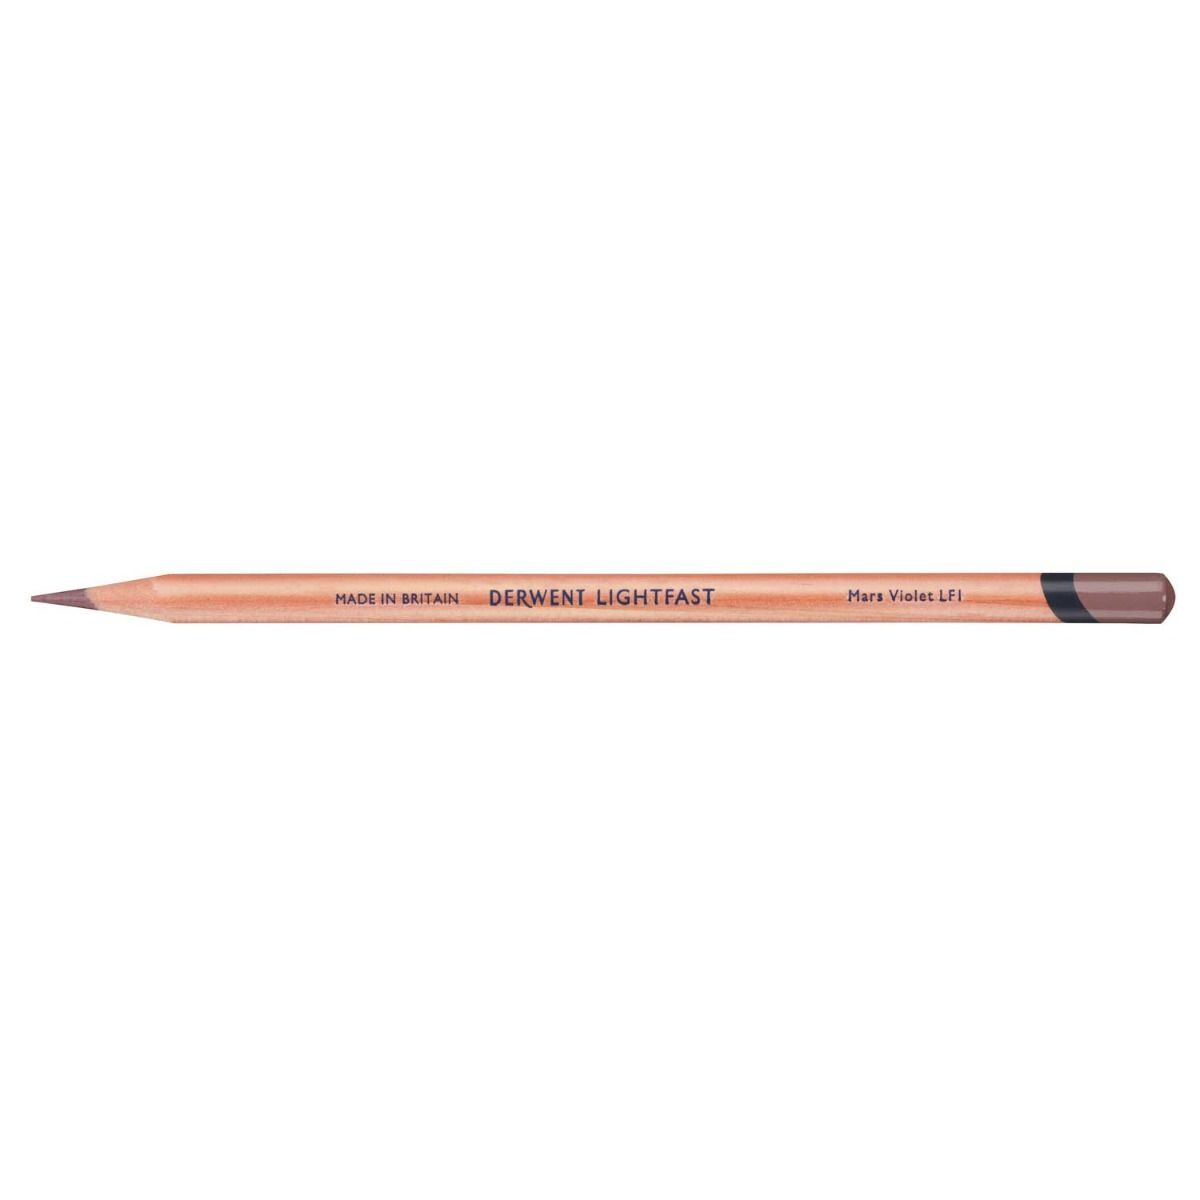 Derwent Lightfast Pencil Colour: Mars Violet